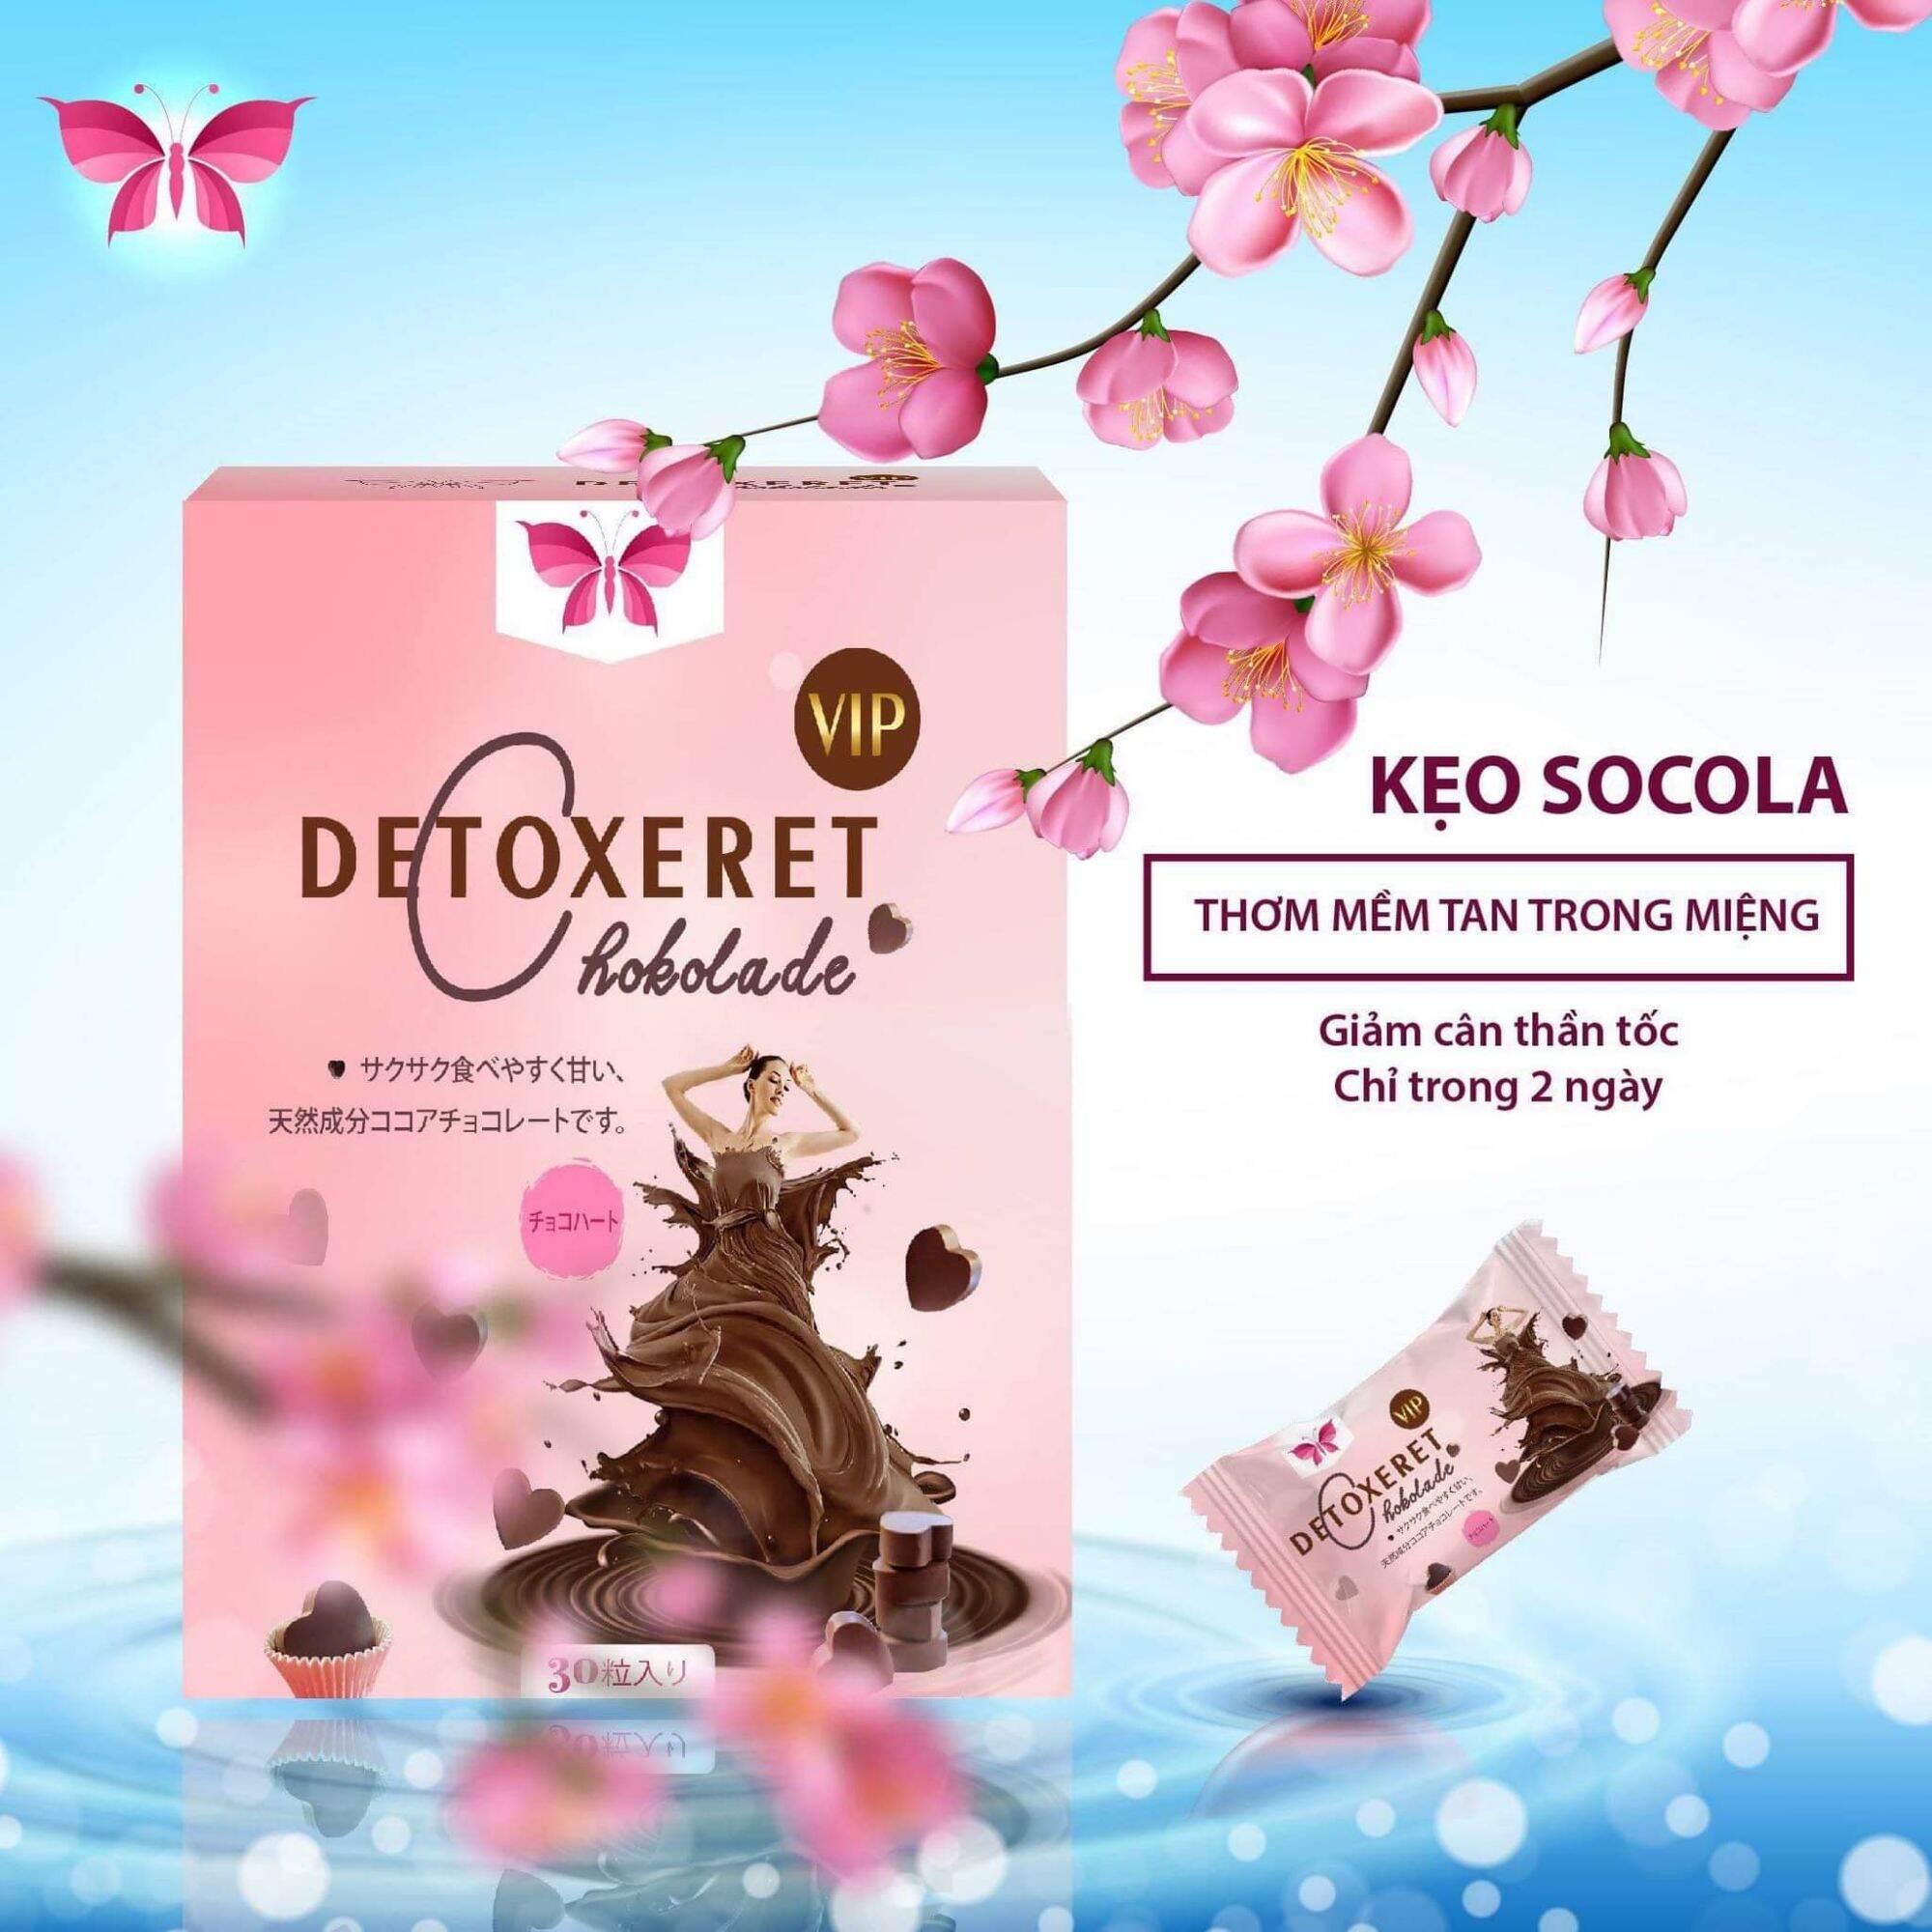 Combo 5 hộp Socola giảm cân Detoxeret Chokolade Vip x3 Hộp 30 gói giảm cân